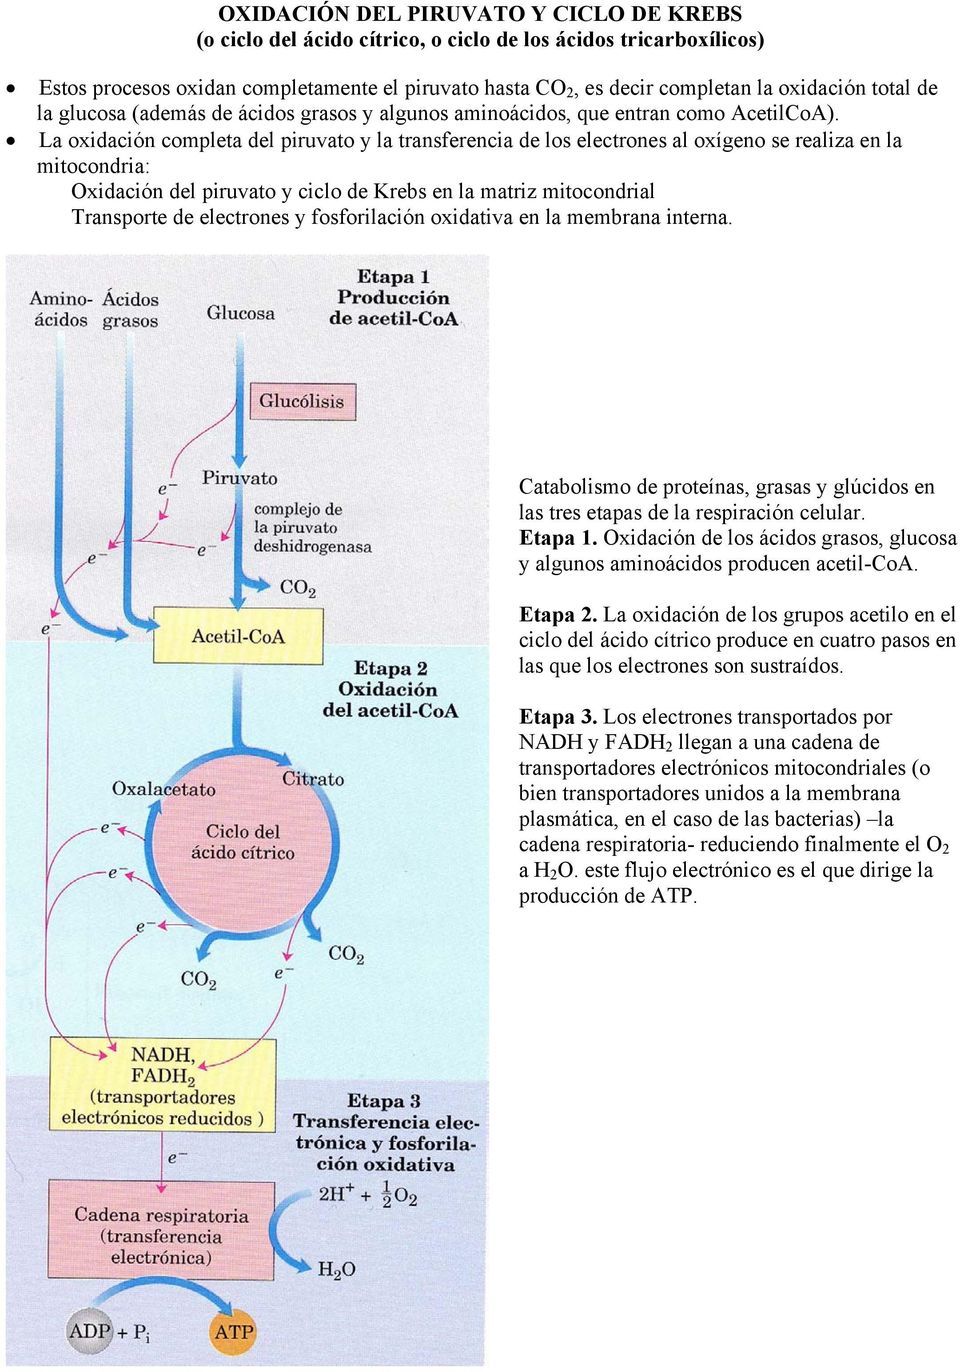 La oxidación completa del piruvato y la transferencia de los electrones al oxígeno se realiza en la mitocondria: Oxidación del piruvato y ciclo de Krebs en la matriz mitocondrial Transporte de